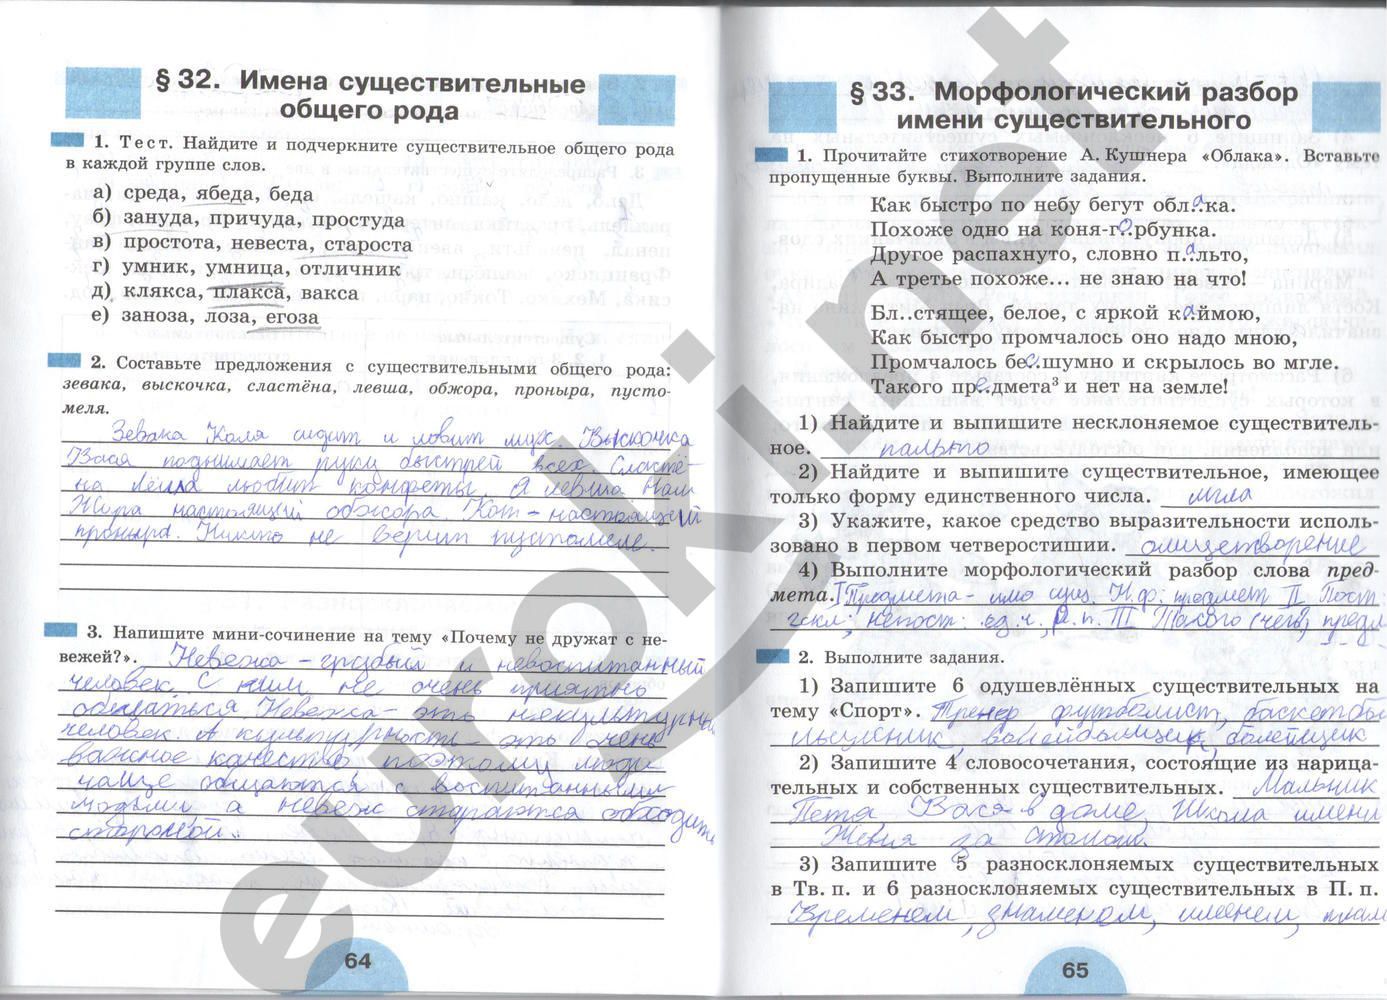 ГДЗ Русский язык 6 класс - стр. 64-65